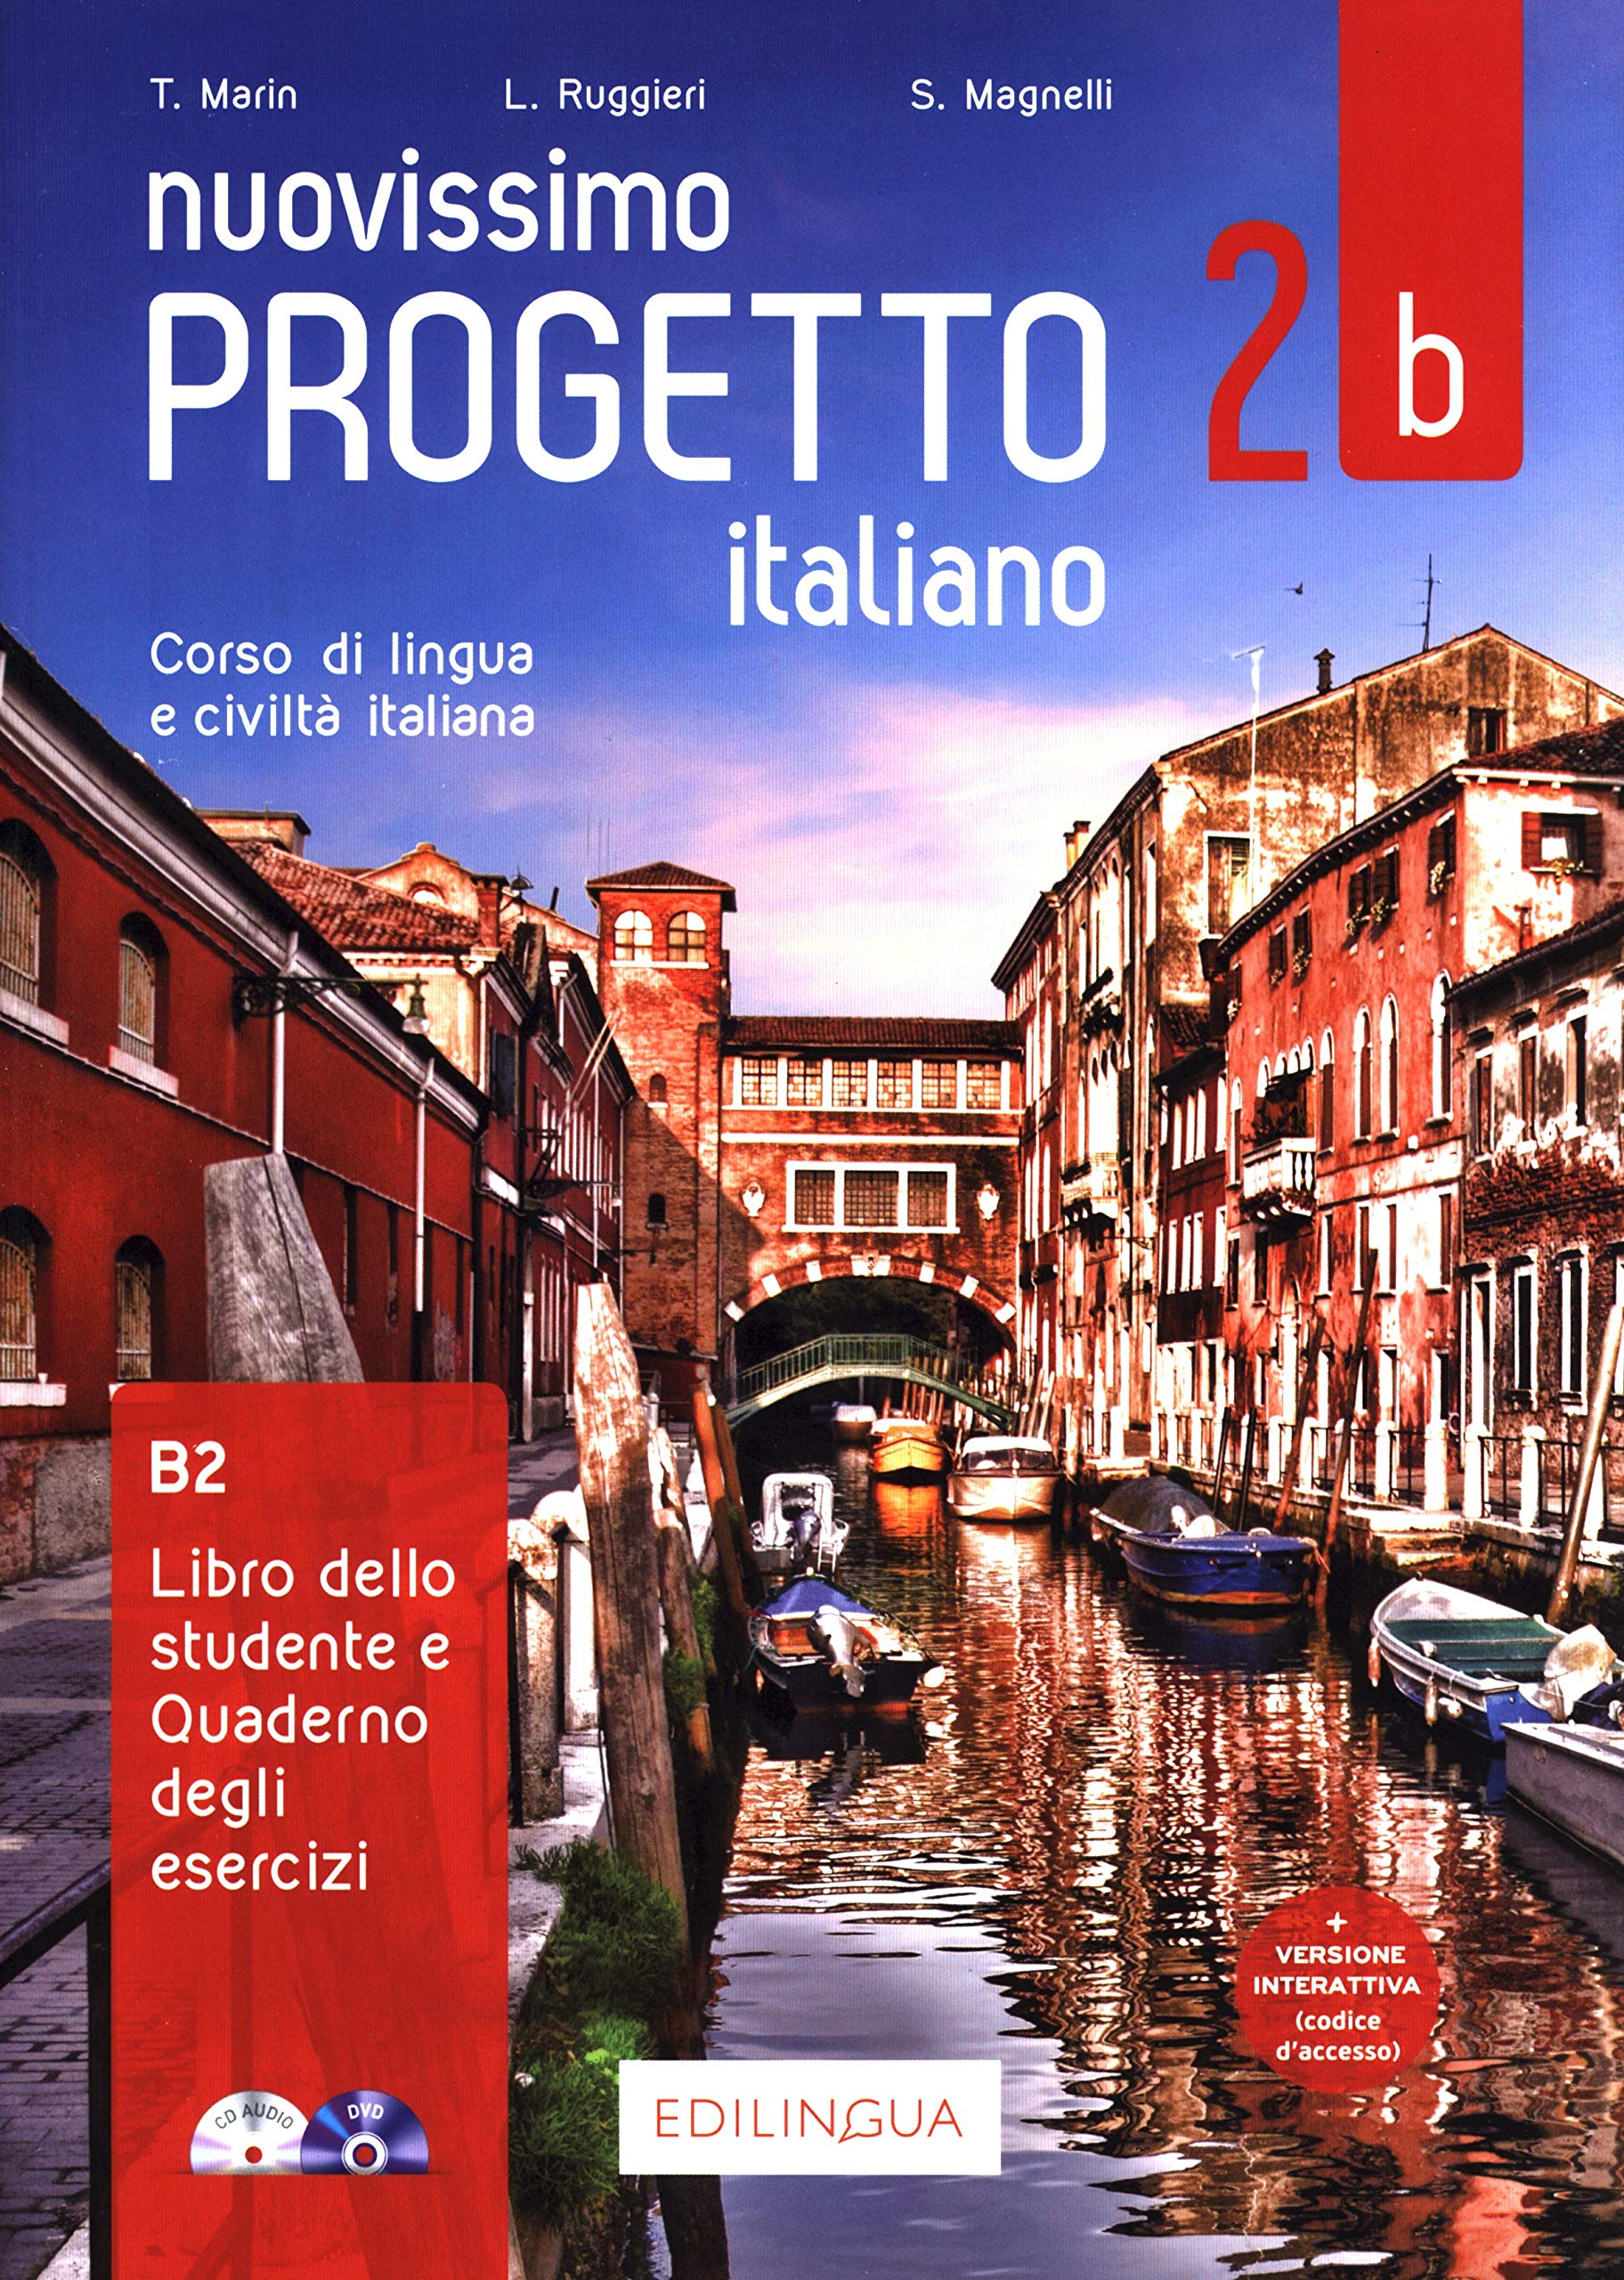 NUOVISSIMO PROGETTO ITALIANO 2b – Libro+Quaderno+CD+DVD